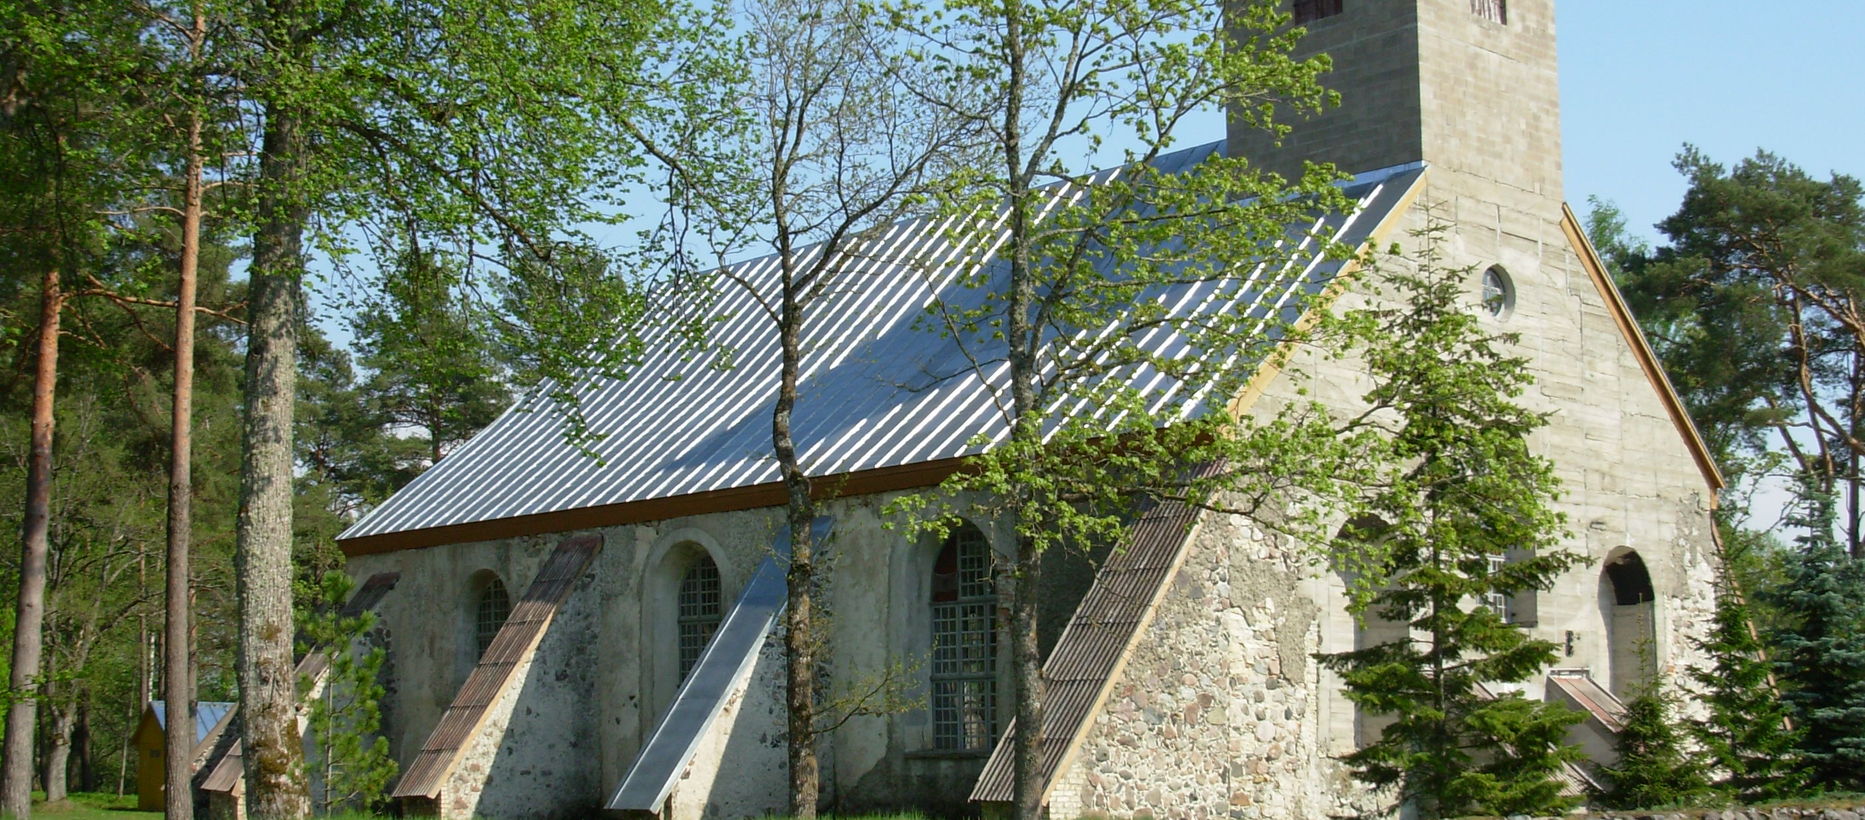 Tõstamaa kyrka